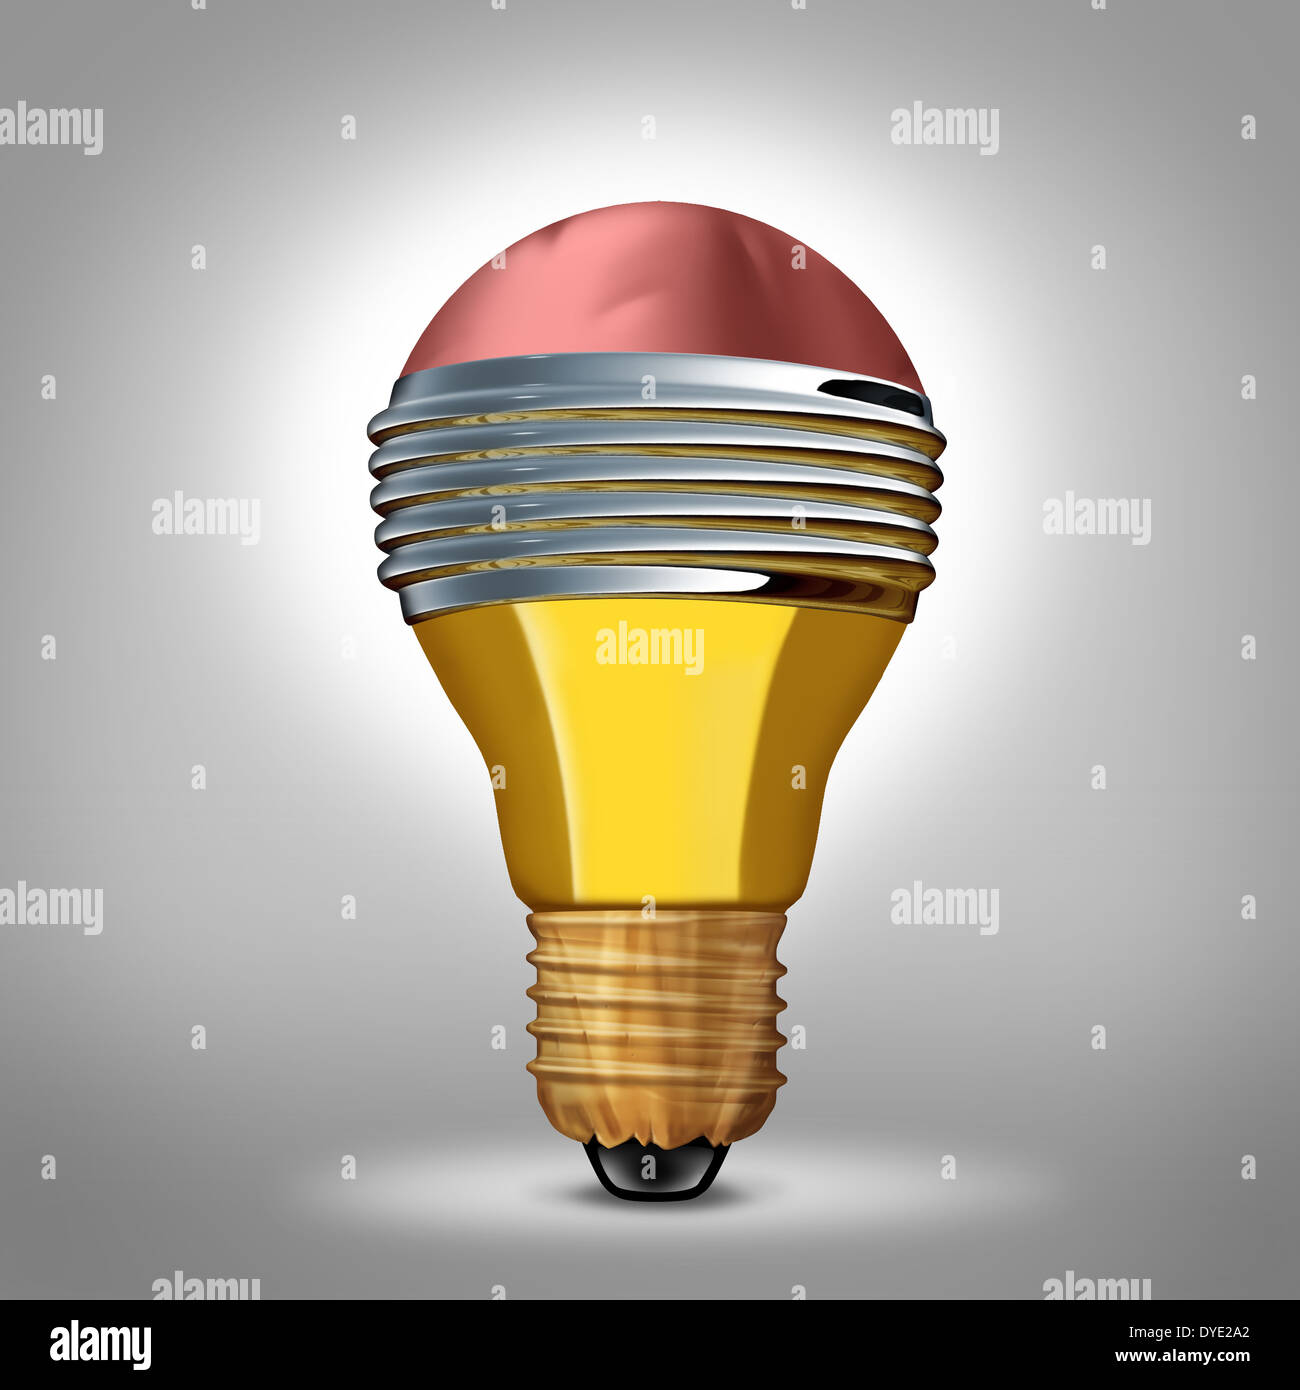 Kreatives Design-Business-Konzept als Symbol Glühbirne hergestellt aus drei dimensionale Bleistift als Kreativität Metapher für intelligente Ideen und innovative Phantasie. Stockfoto